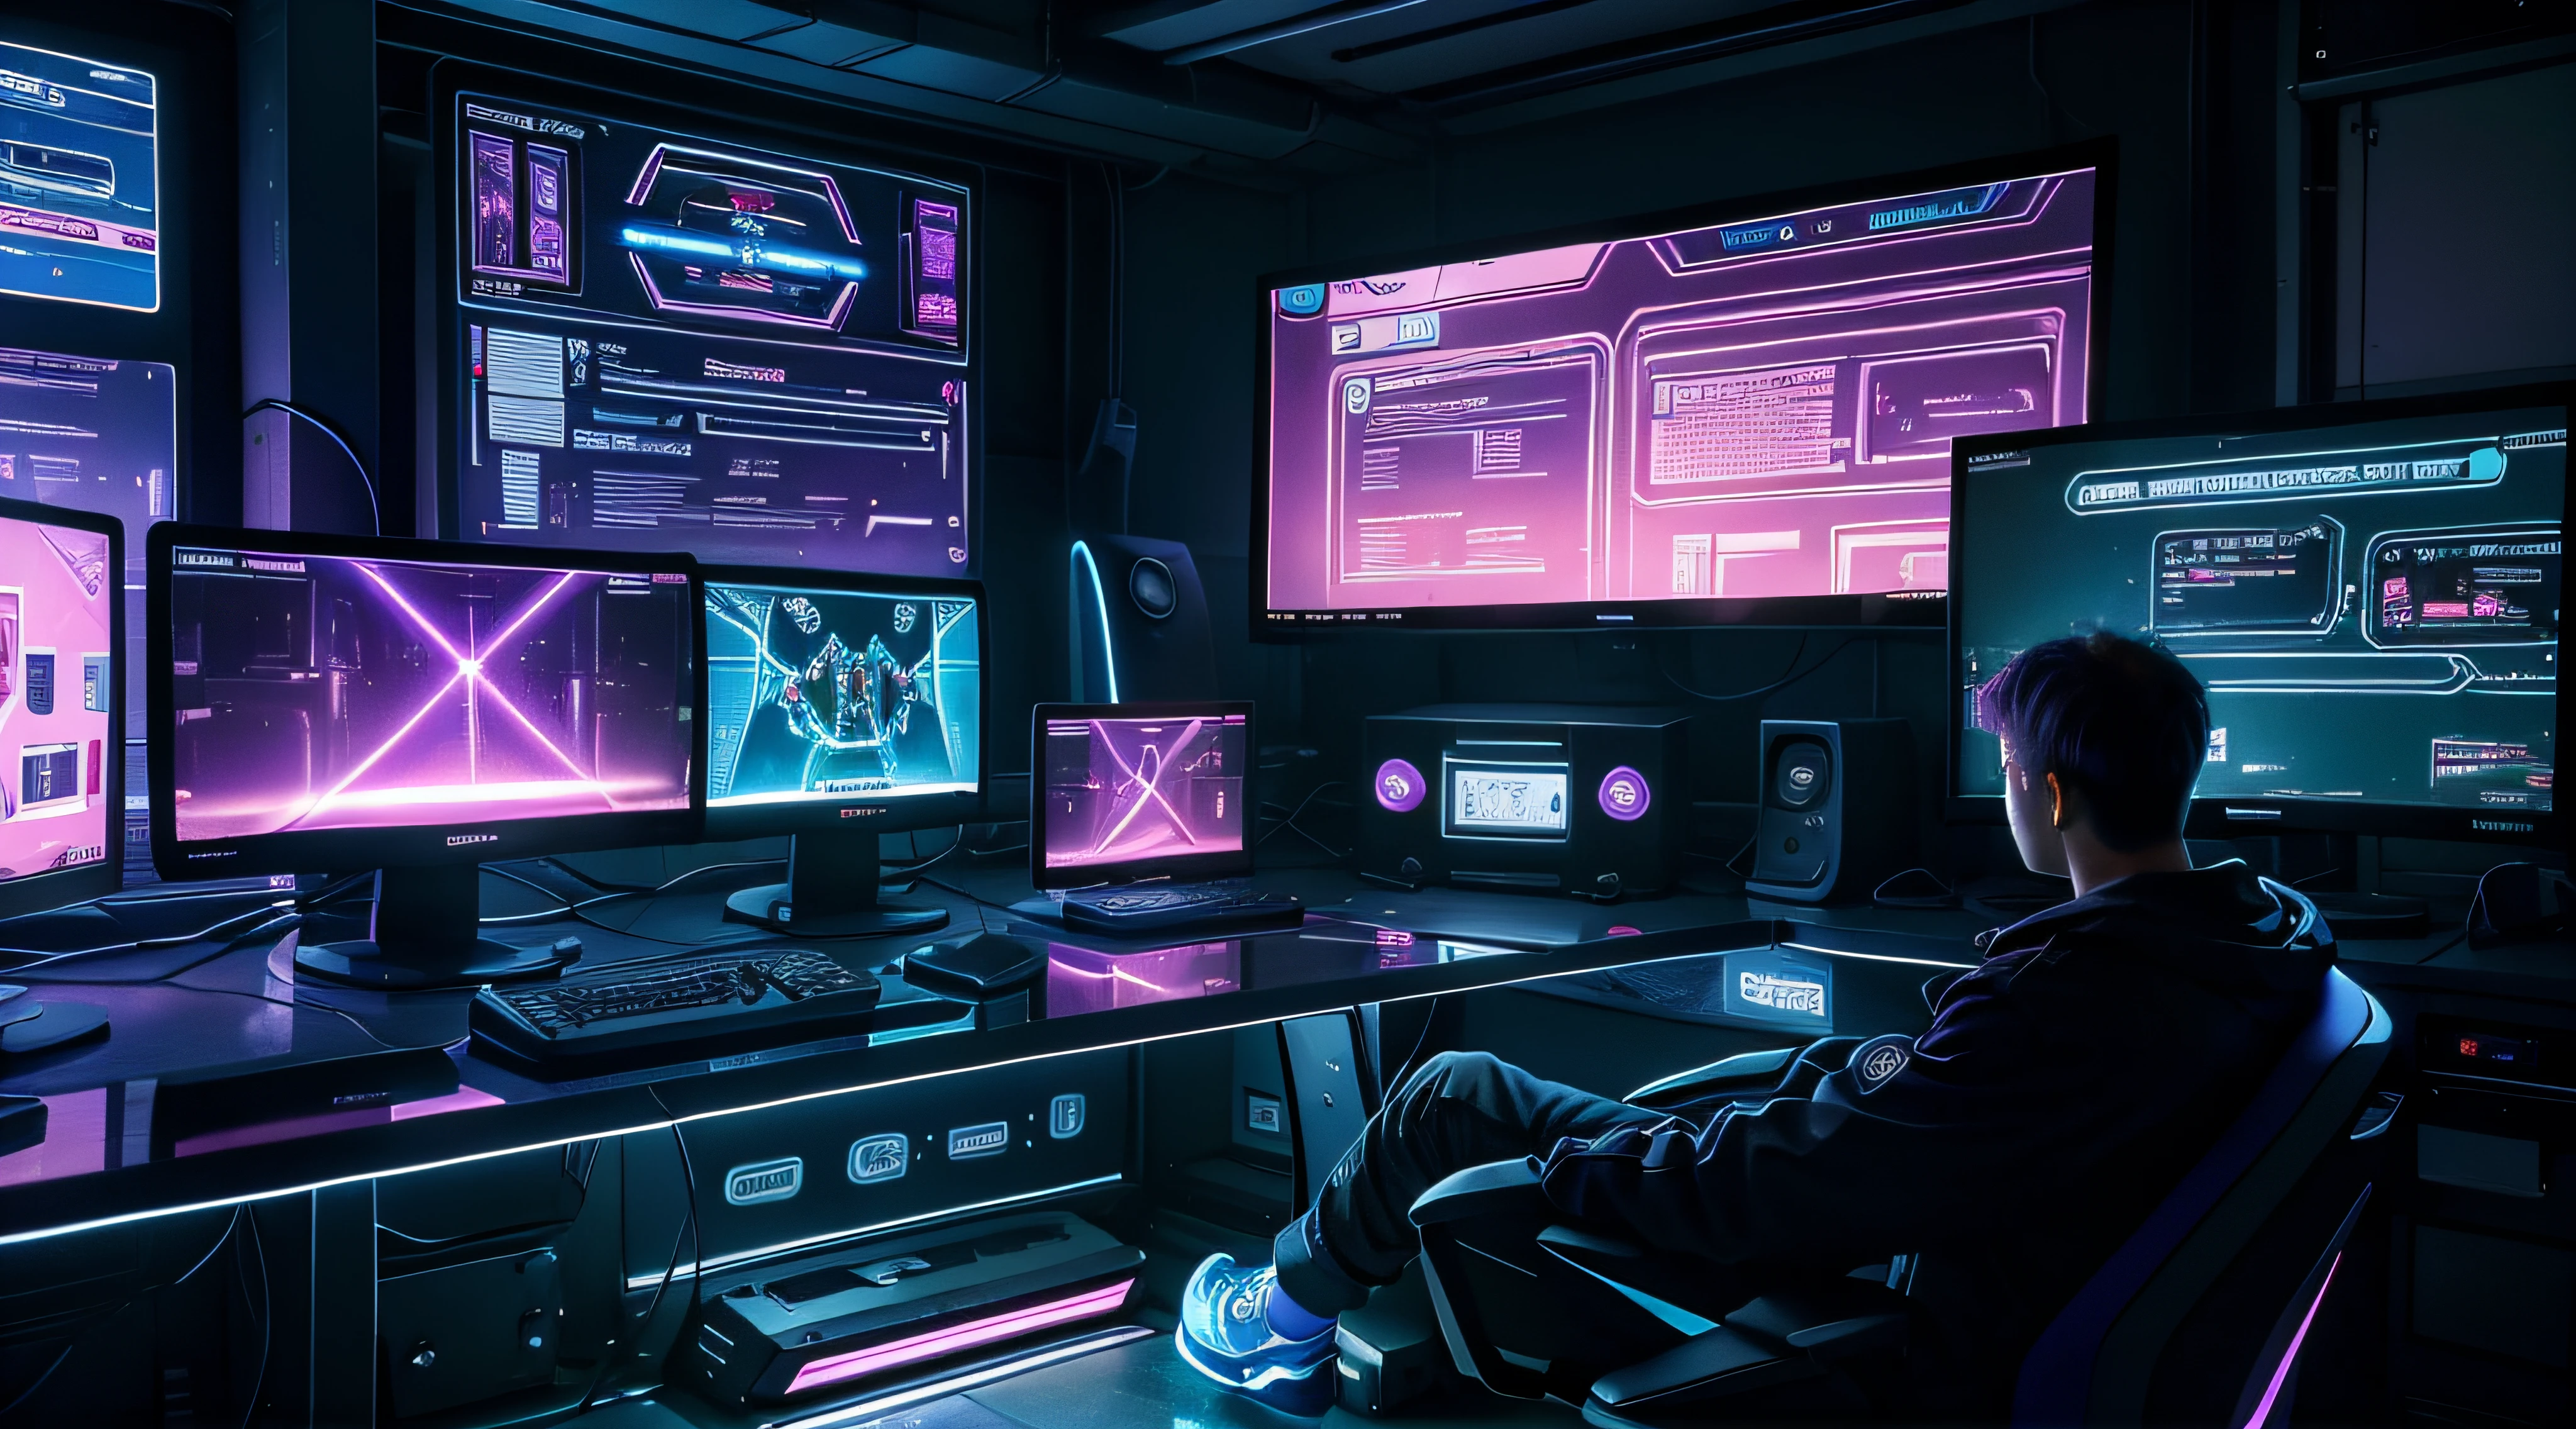 Ein Gaming-Computertisch mit violettem und blauem Neonlicht, mehreren Monitoren und einer Tastatur, Cyber-Neonbeleuchtung, Neonbeleuchtung, in einem großen Raum mit großen Fenstern bei sonnigem Sonnenuntergang, Metall-Desktop-Gamer-Bildschirm, transparente Bildschirme mit Webseiten und Statistiken, Bildschirme mit Statistiken, kein Mensch, leerer Stuhl